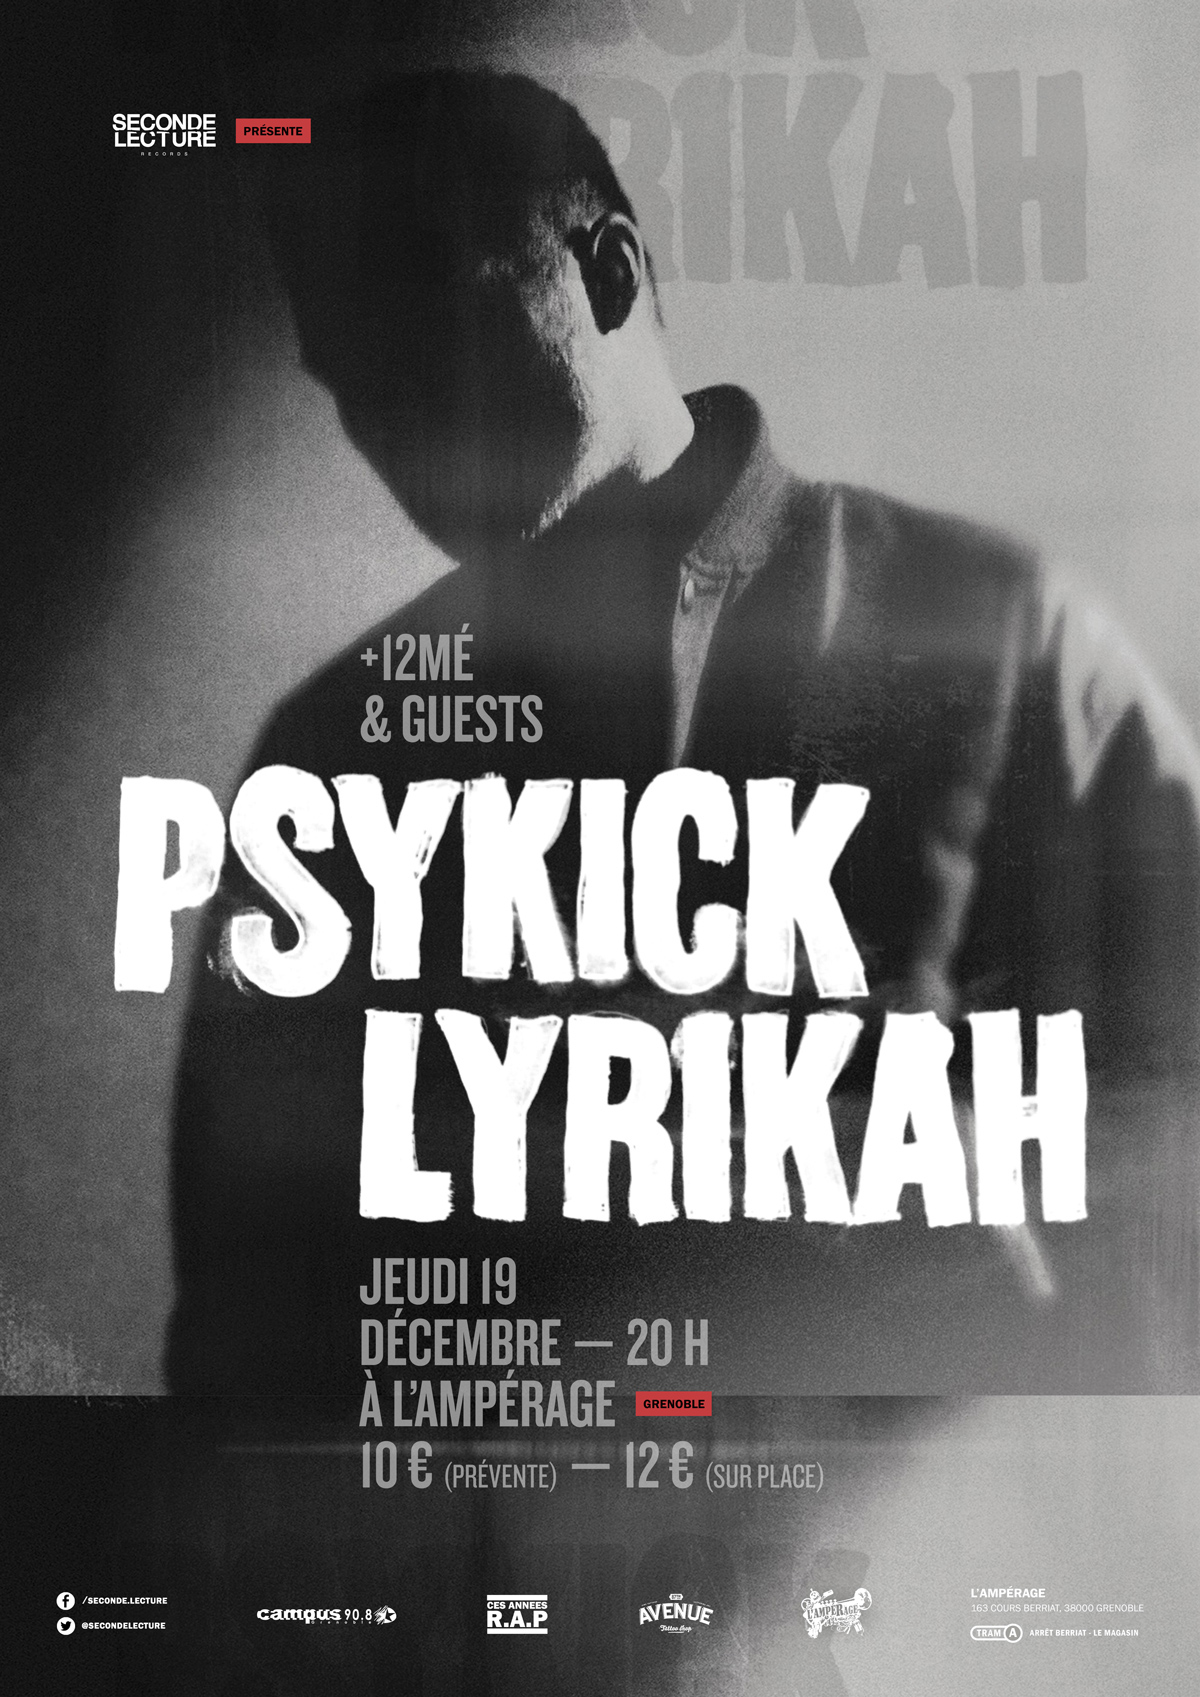 posters affiche poster cultural museum Show concert font Typeface rap hiphop